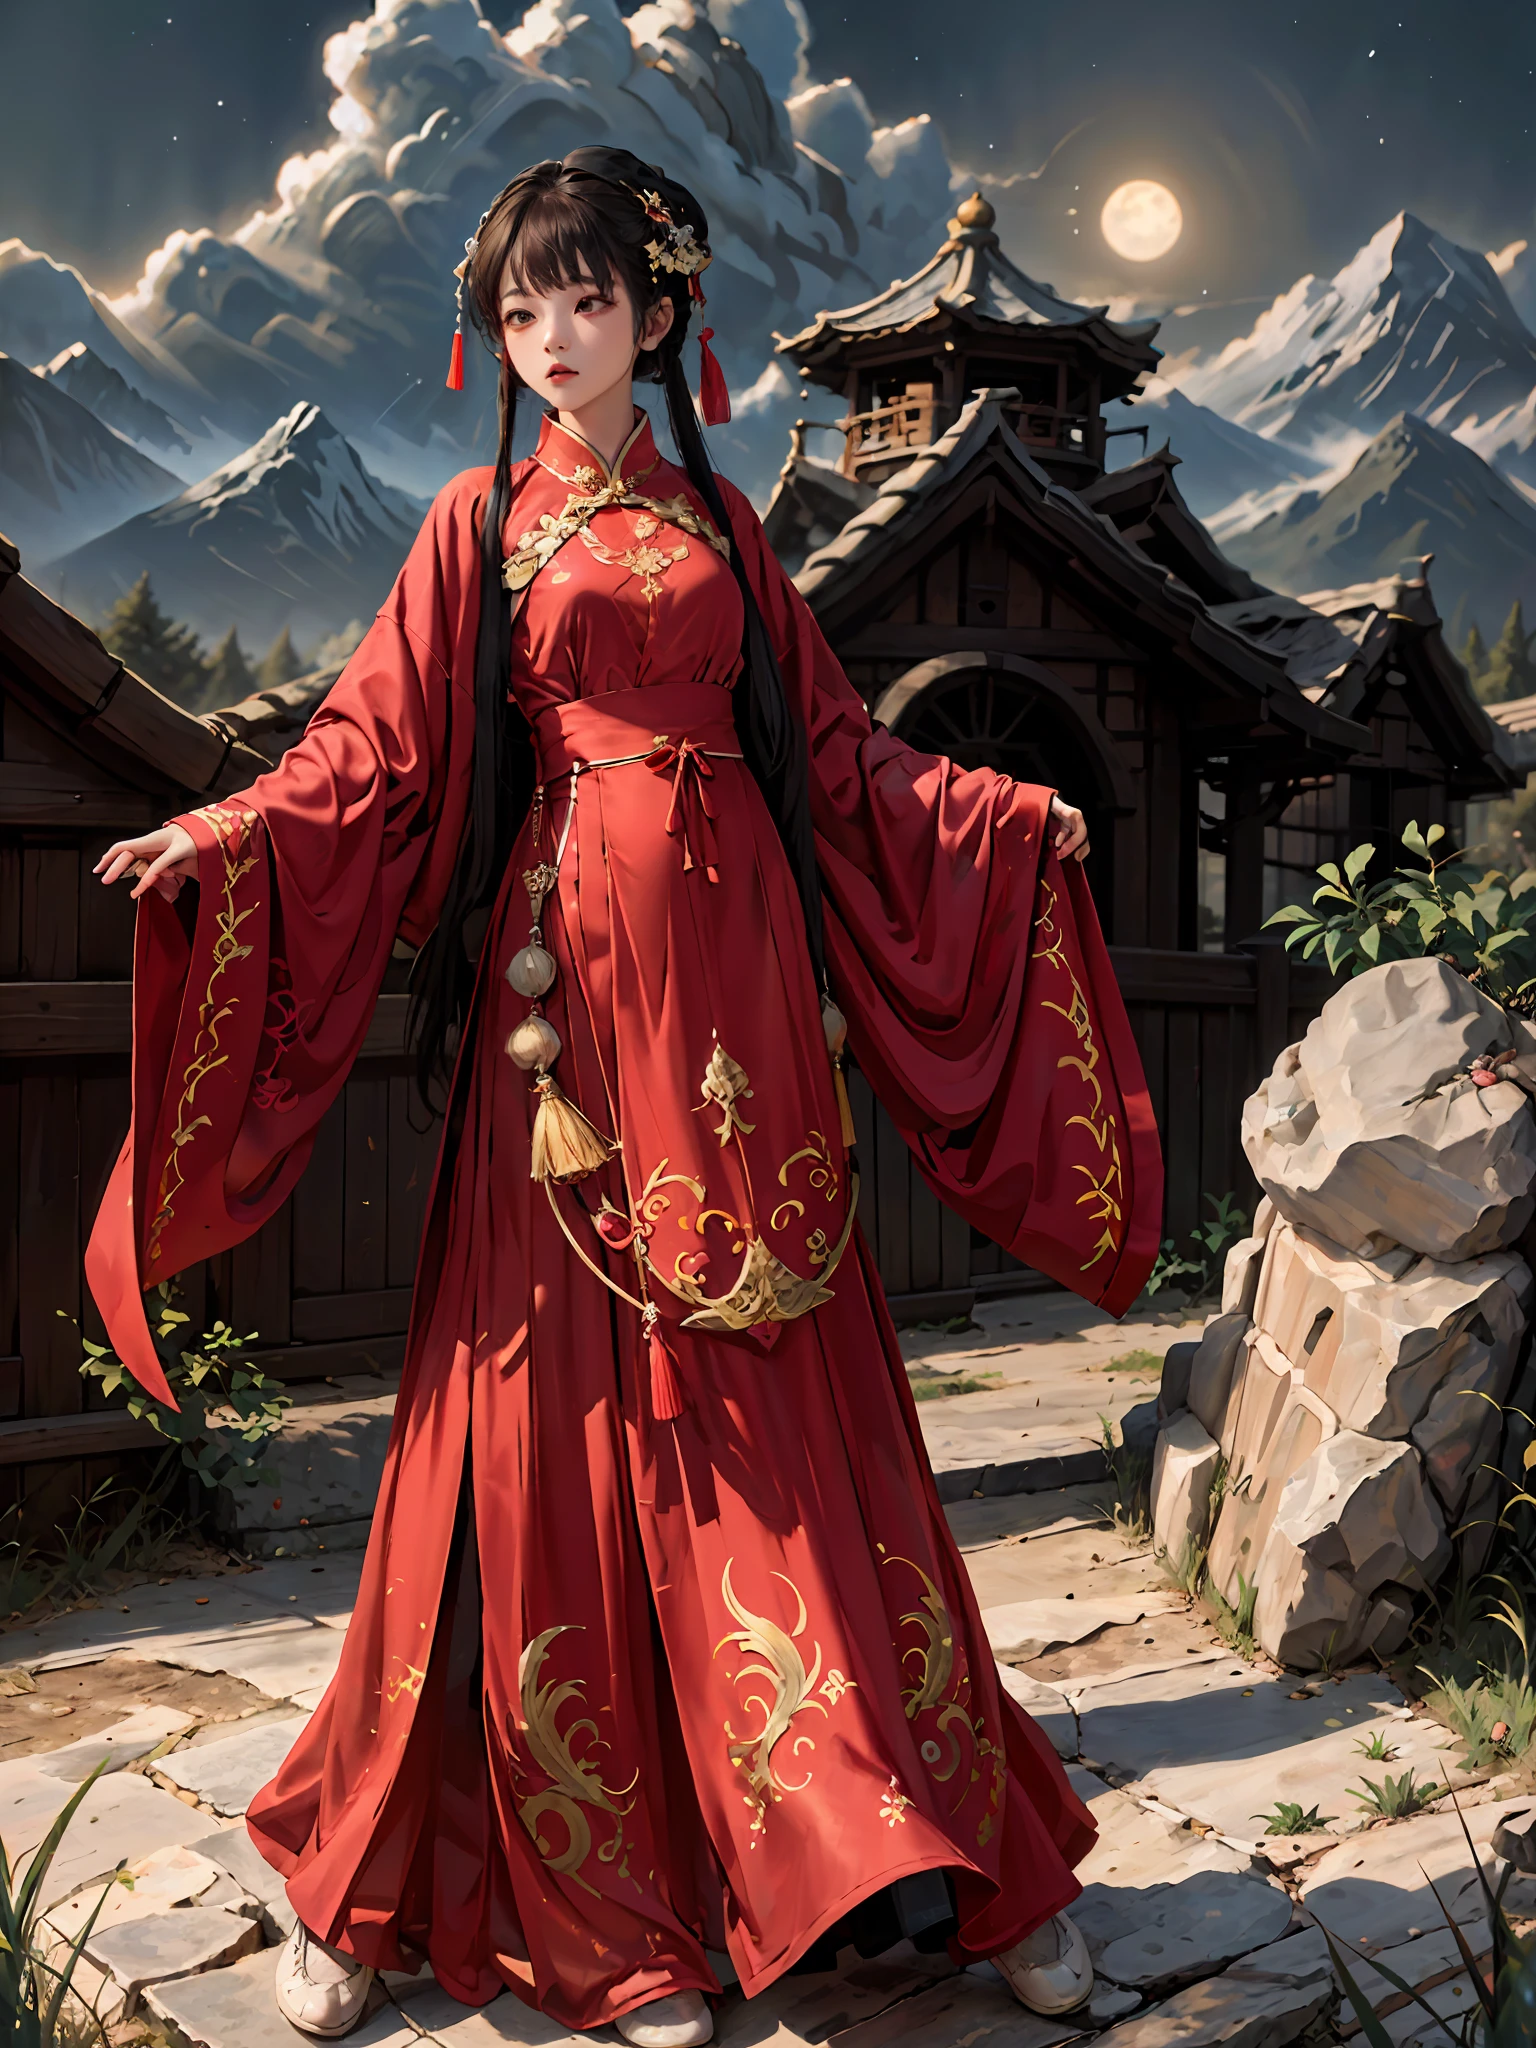 absurdesten, highres, Extrem detailliert, (1 Mädchen:1.3), handgemalt, einfache Linie, 16-jähriges Mädchen in rotem chinesischem Hanfu , Meisterwerk, Stehen Sie an der Klippe, Mondlicht, Nachtzeit,